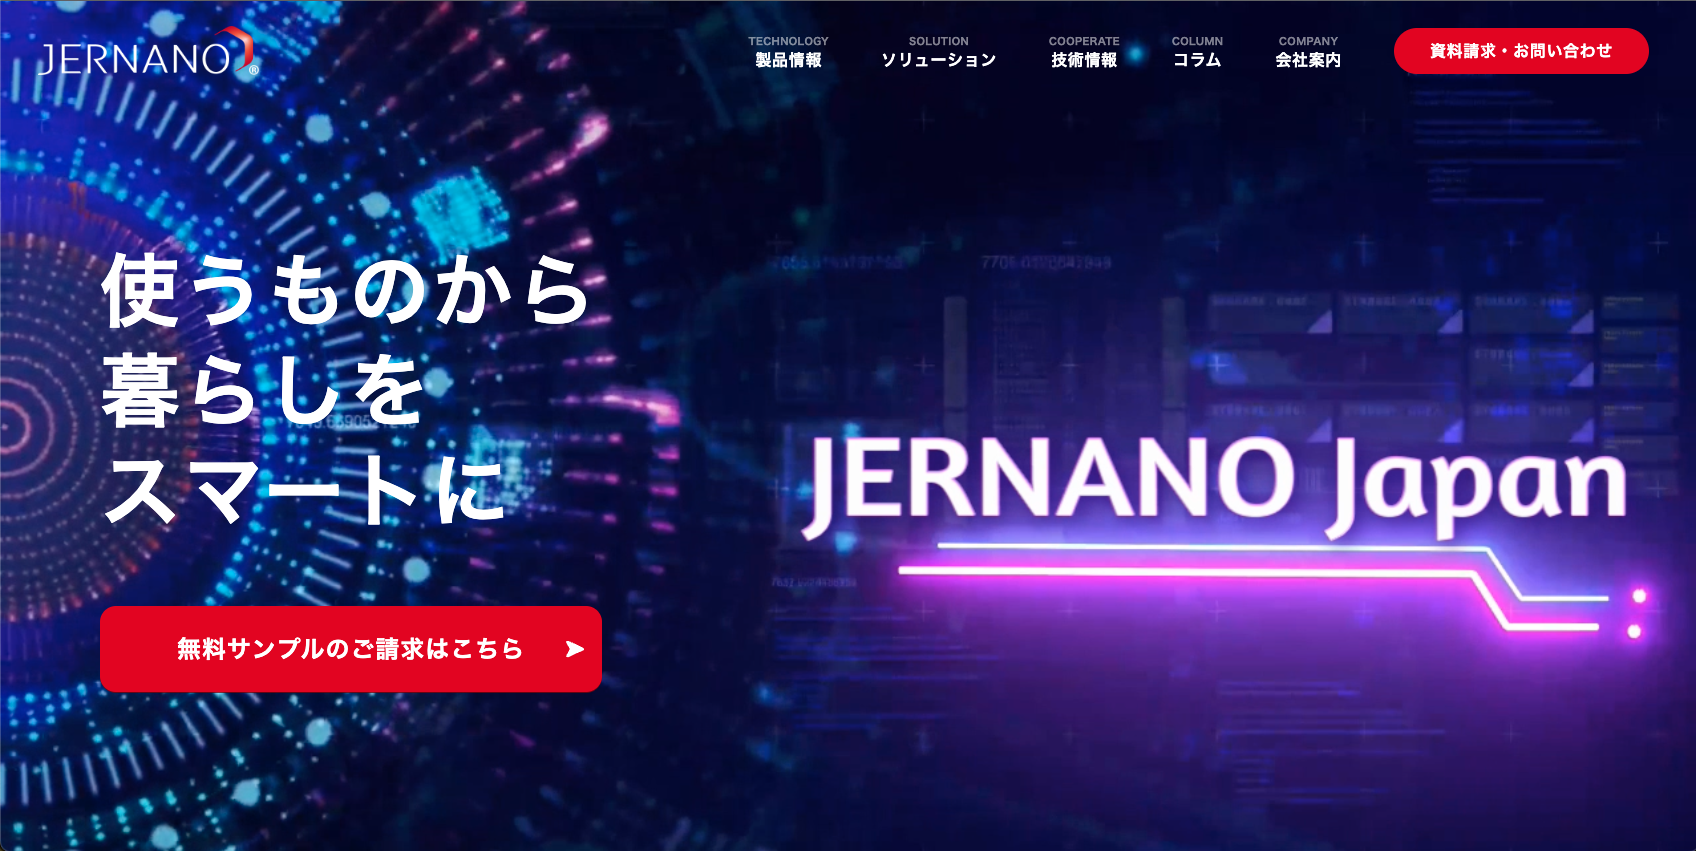 当社は、JERNANO「コーポレートサイト」をリニューアルいたしました。